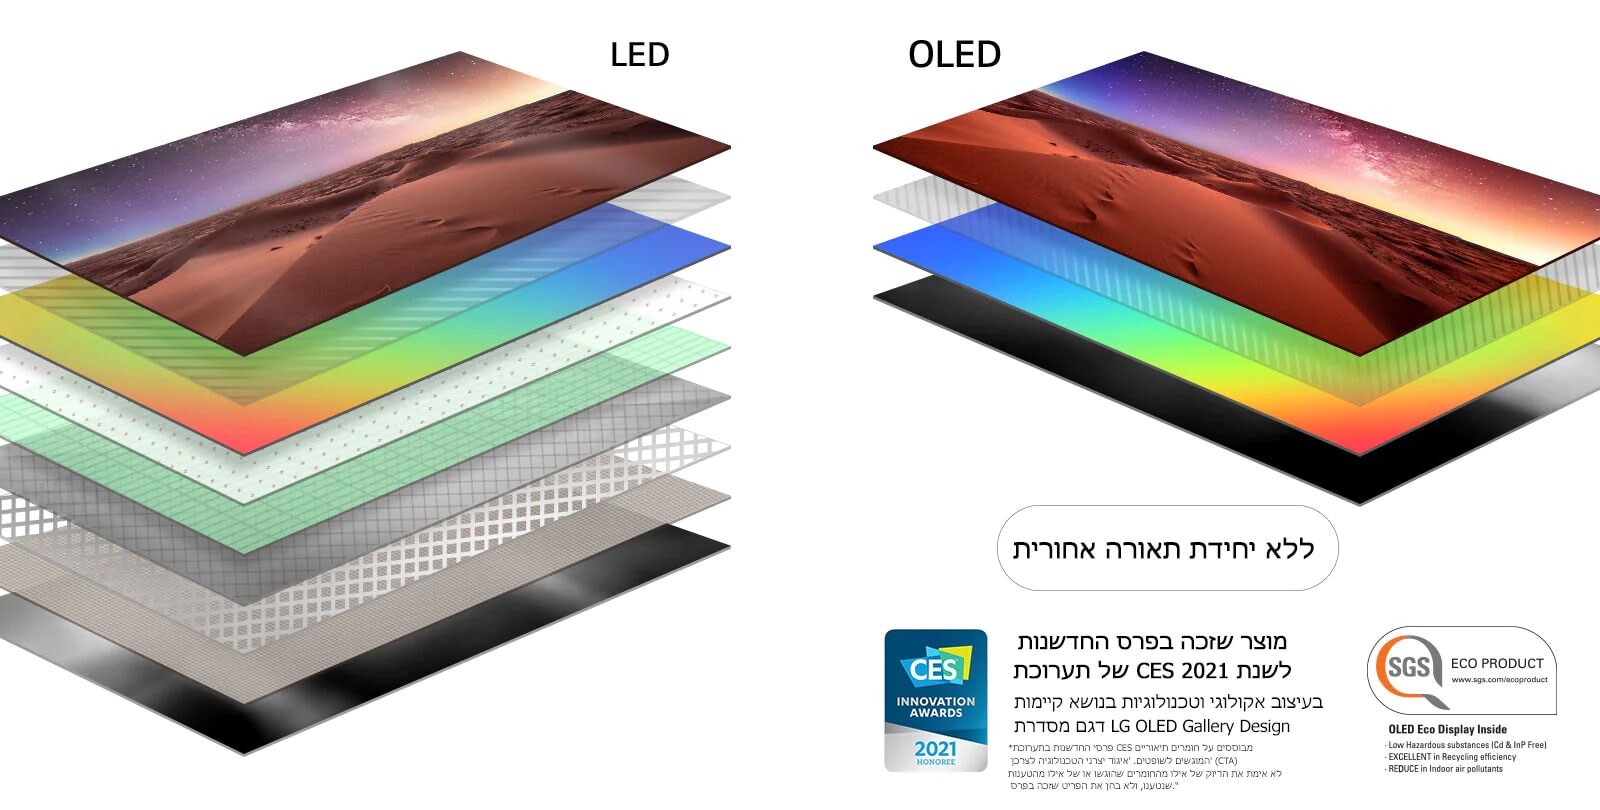 השוואה של  שכבות תצוגה בין תאורה אחורית של טלוויזיית LED לבין טלוויזיית OLED בעלת הארה עצמית (הפעילו את הסרטון)